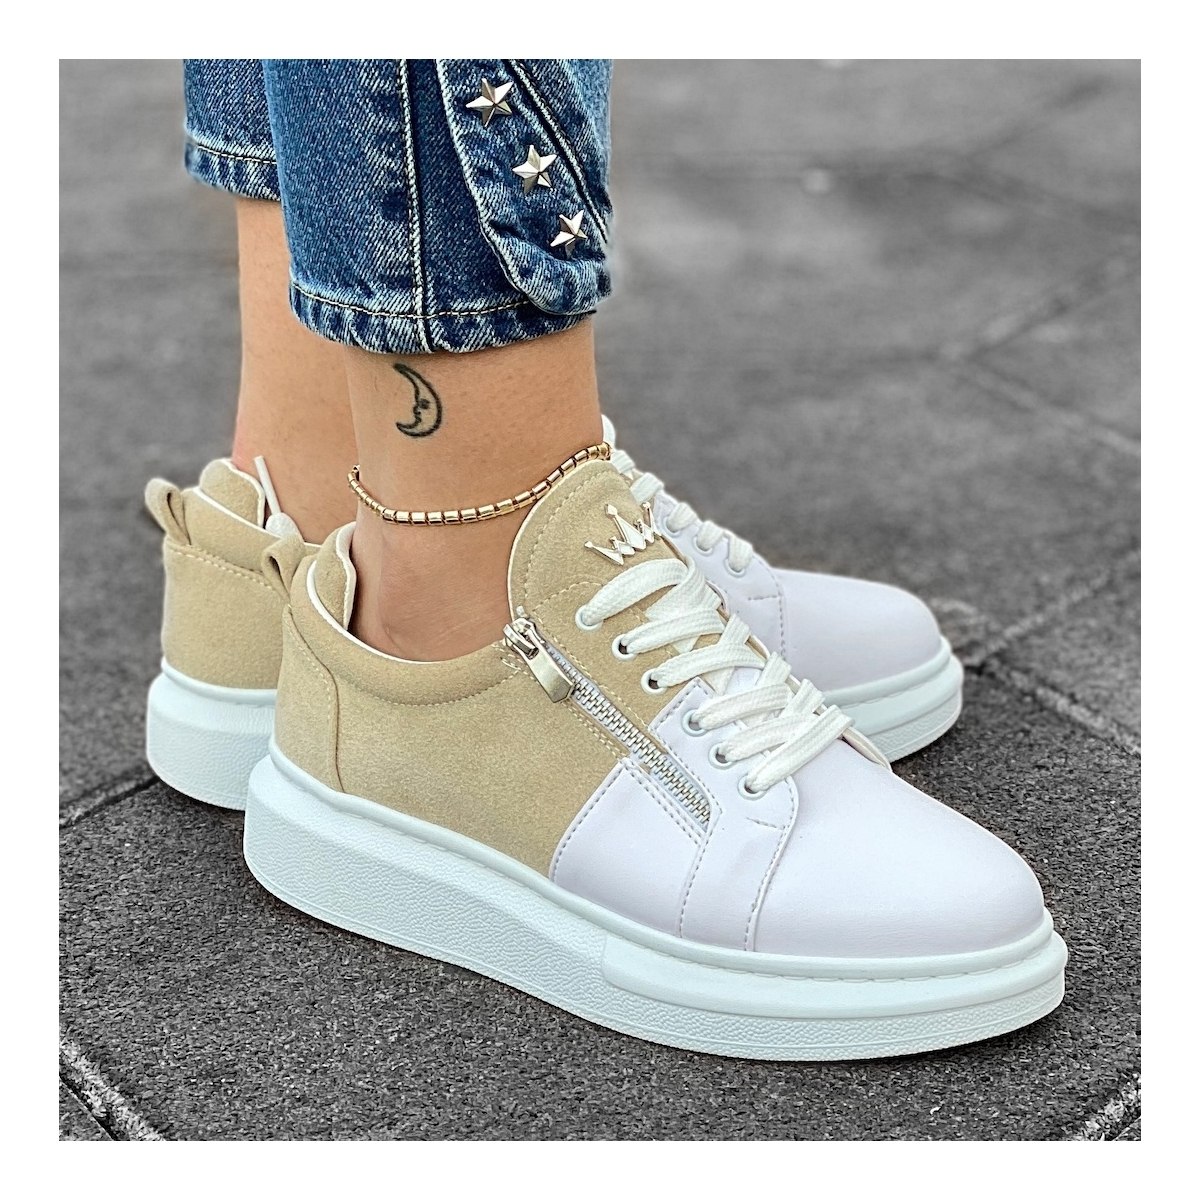 Women's Hype Sole Zipped Style Sneakers In Latte-White - 6